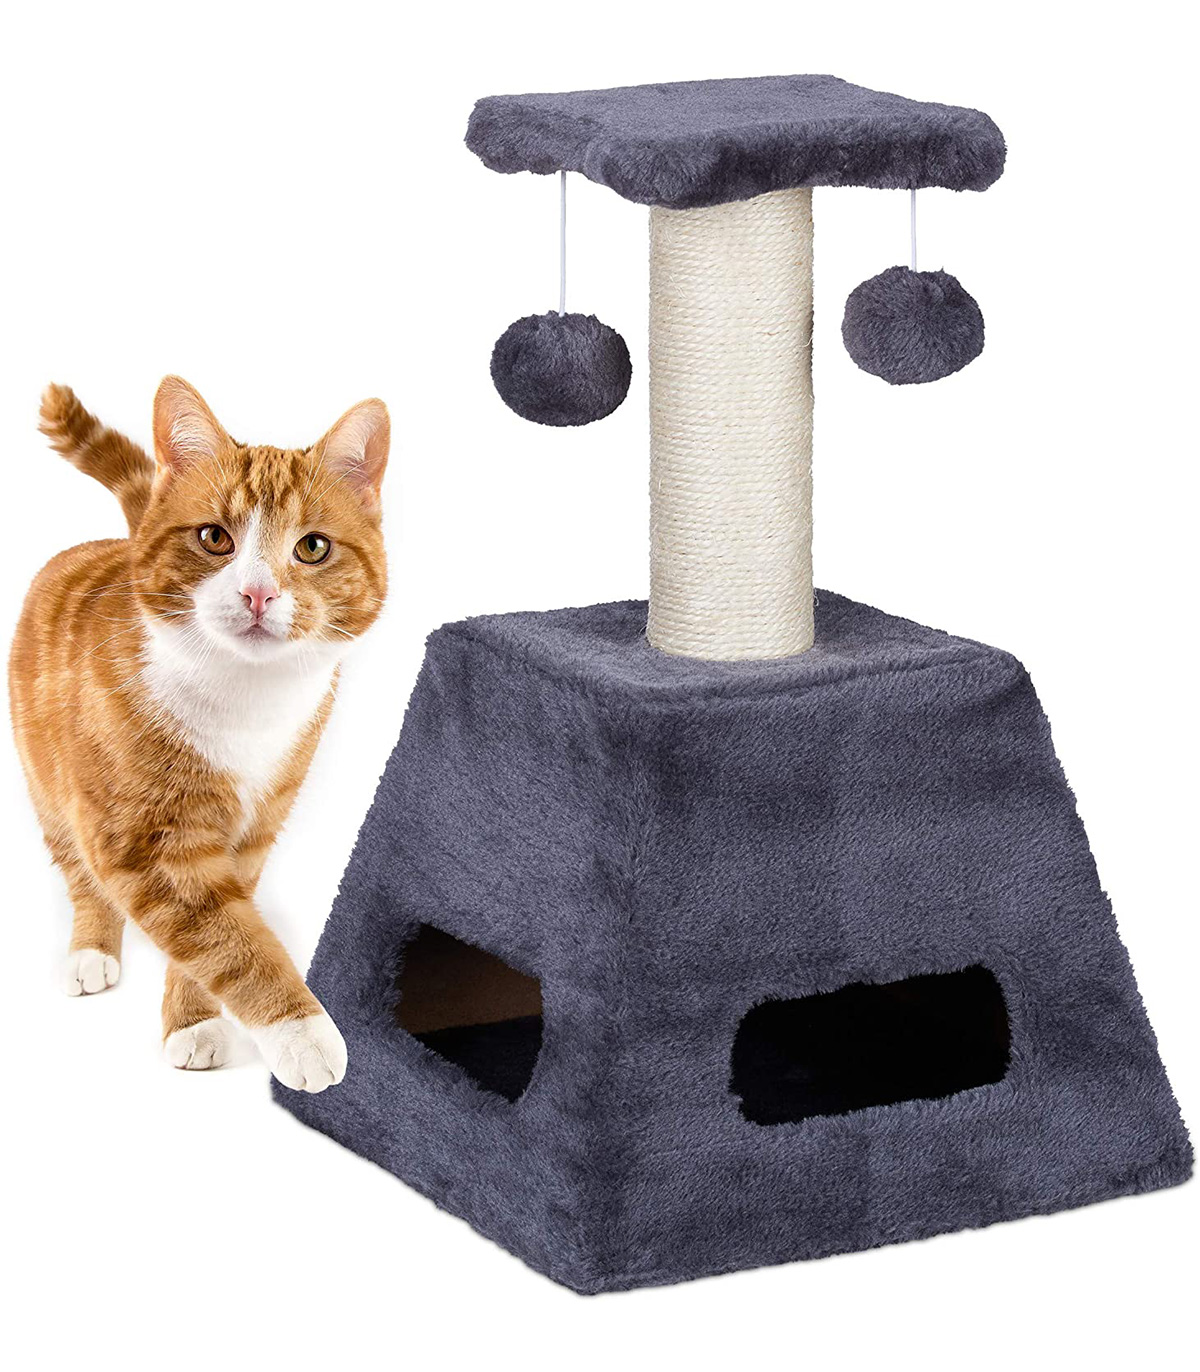 Stalp de zgariat pentru pisici cu trunchi de sisal si jucarii, Turn mic, Gri, 27 x 27 x 42 cm Ansambluri pret redus imagine 2022